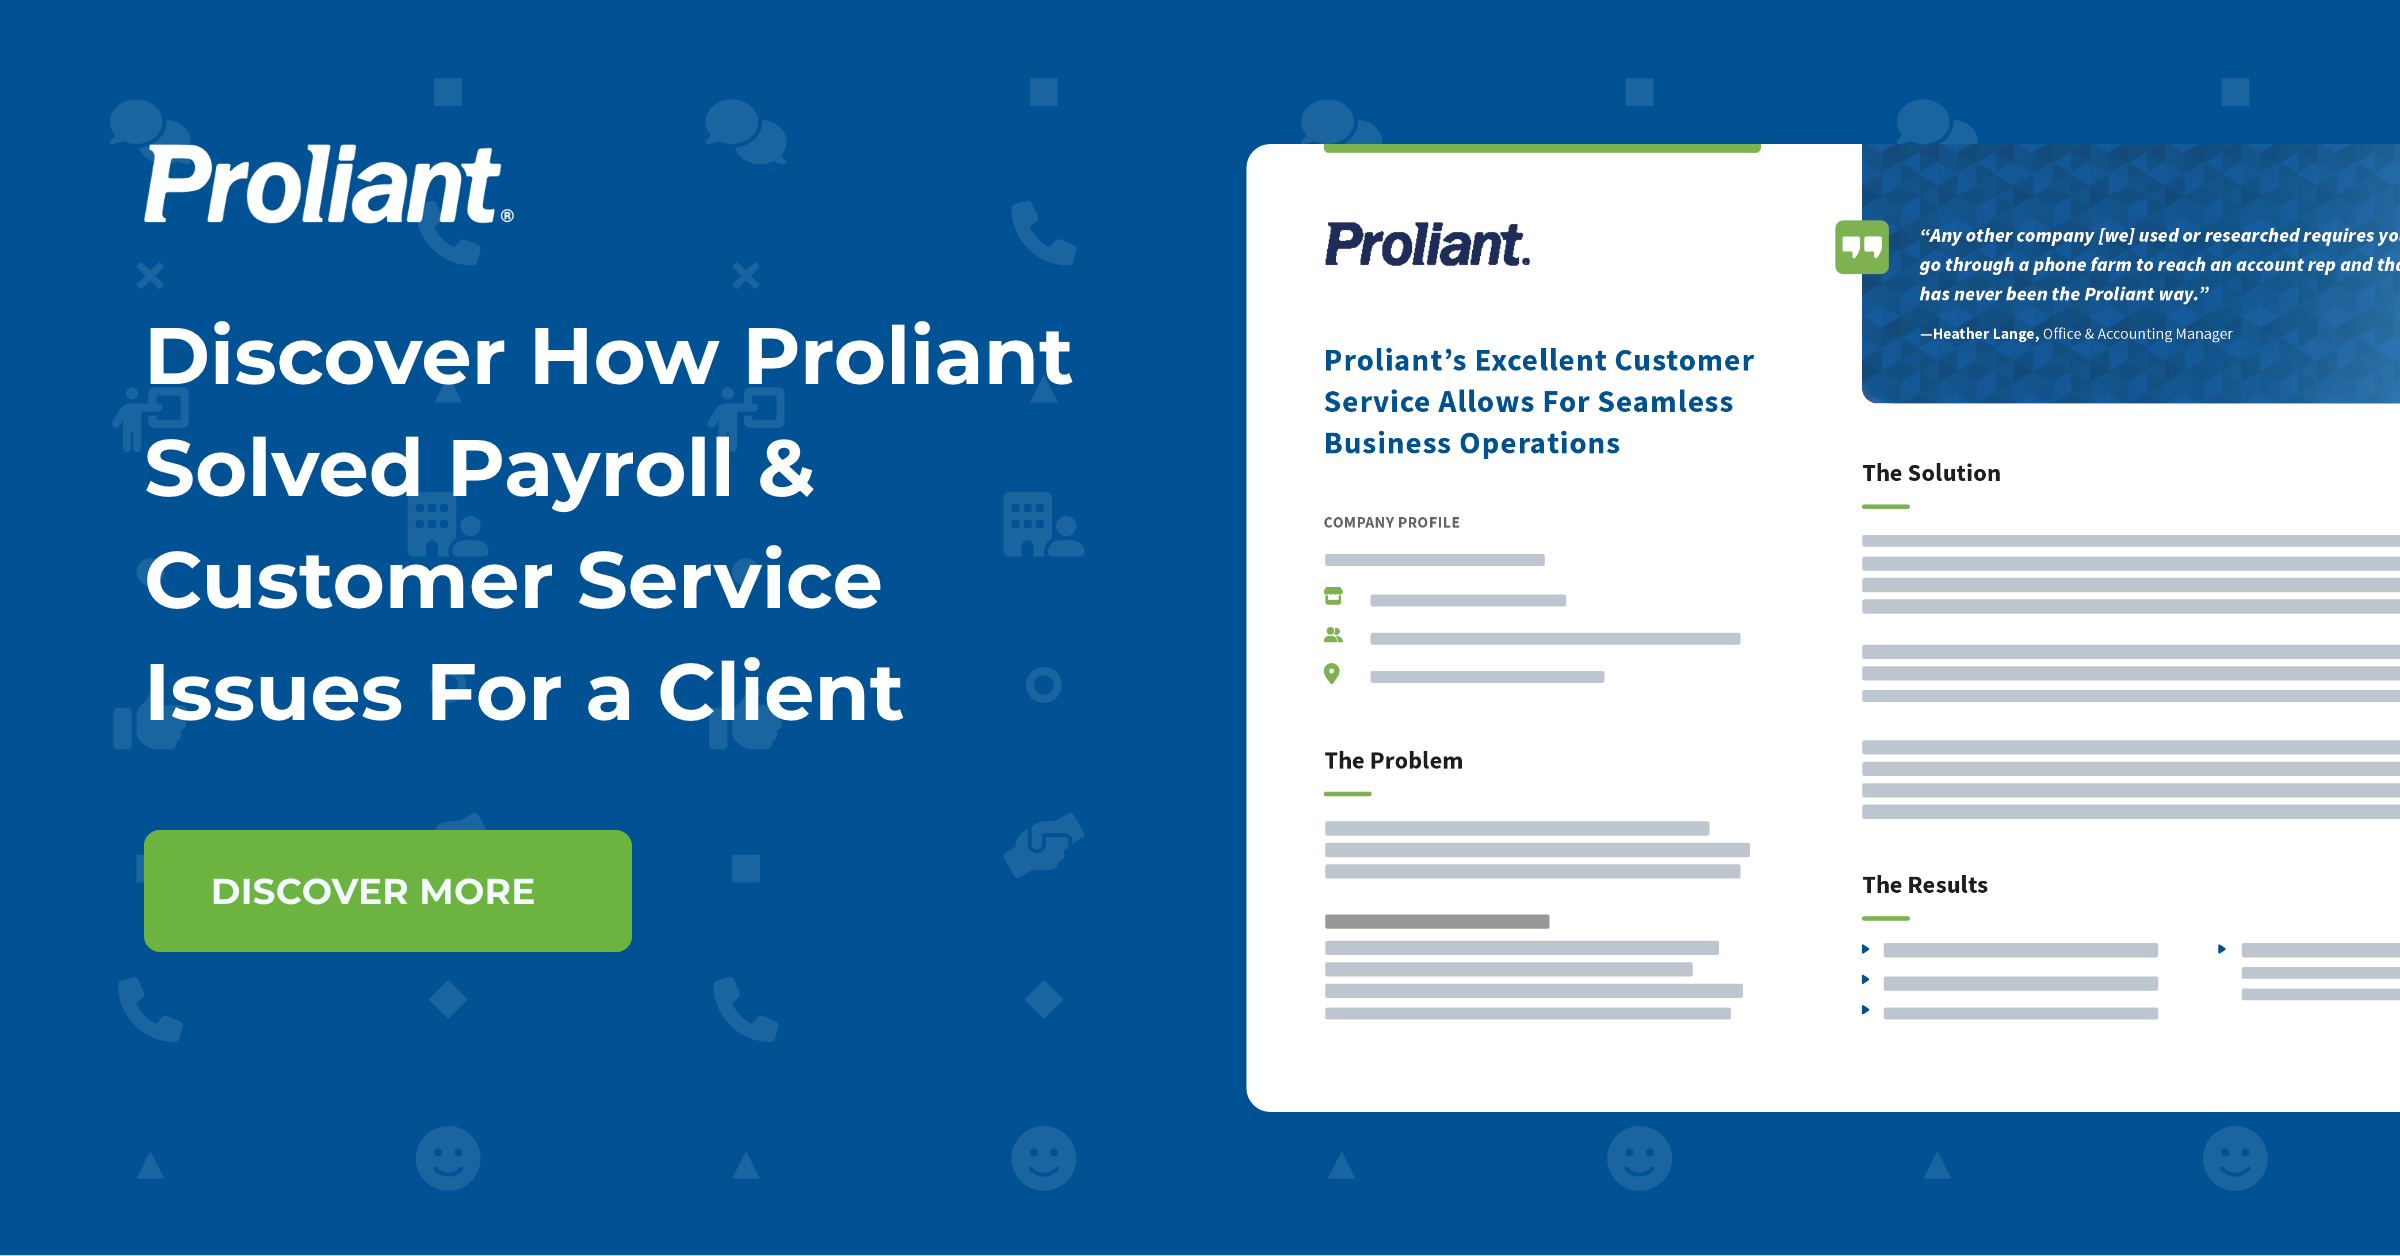 Proliant - Ansara Customer Service Case Study - Feature Image